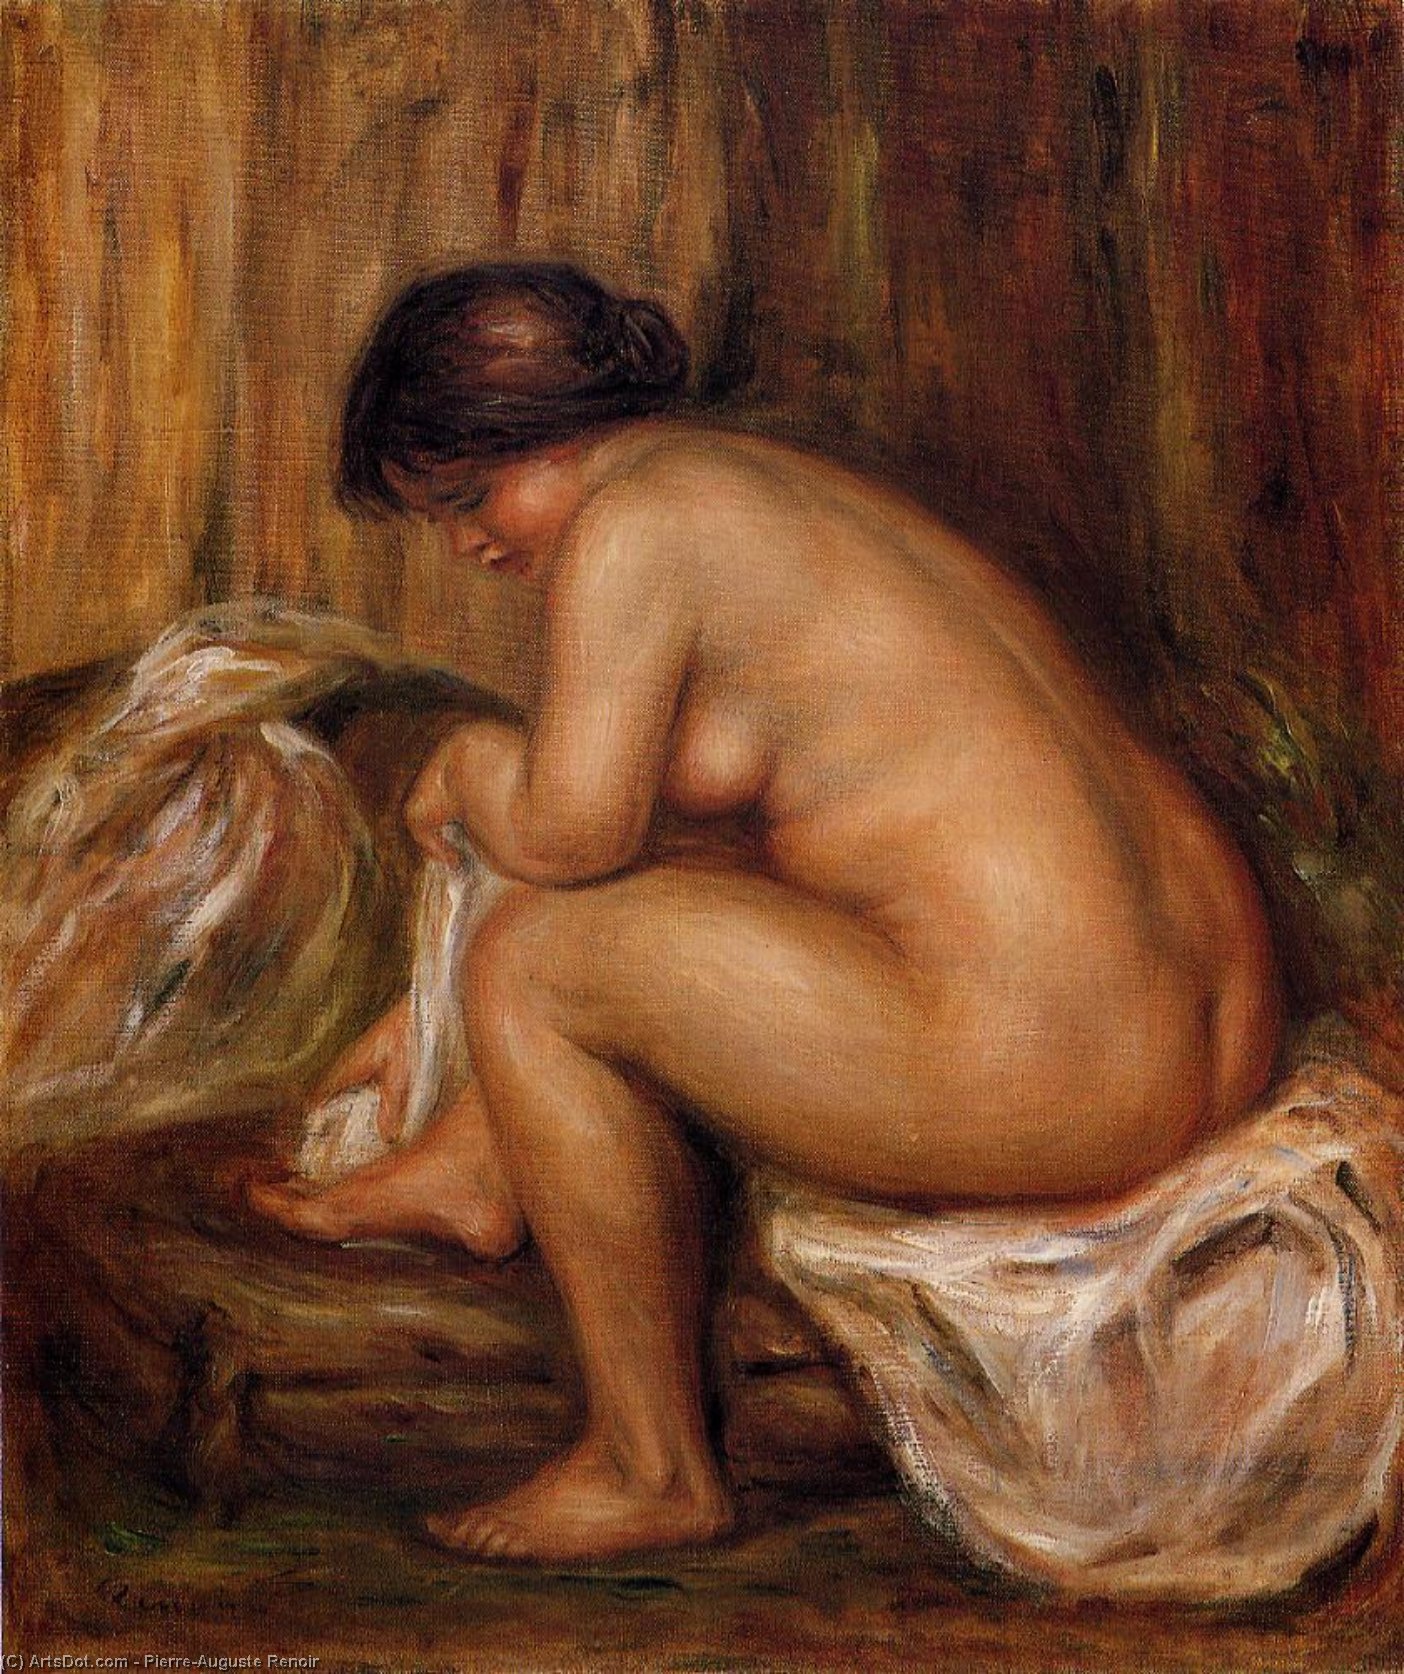 WikiOO.org - אנציקלופדיה לאמנויות יפות - ציור, יצירות אמנות Pierre-Auguste Renoir - After Bathing